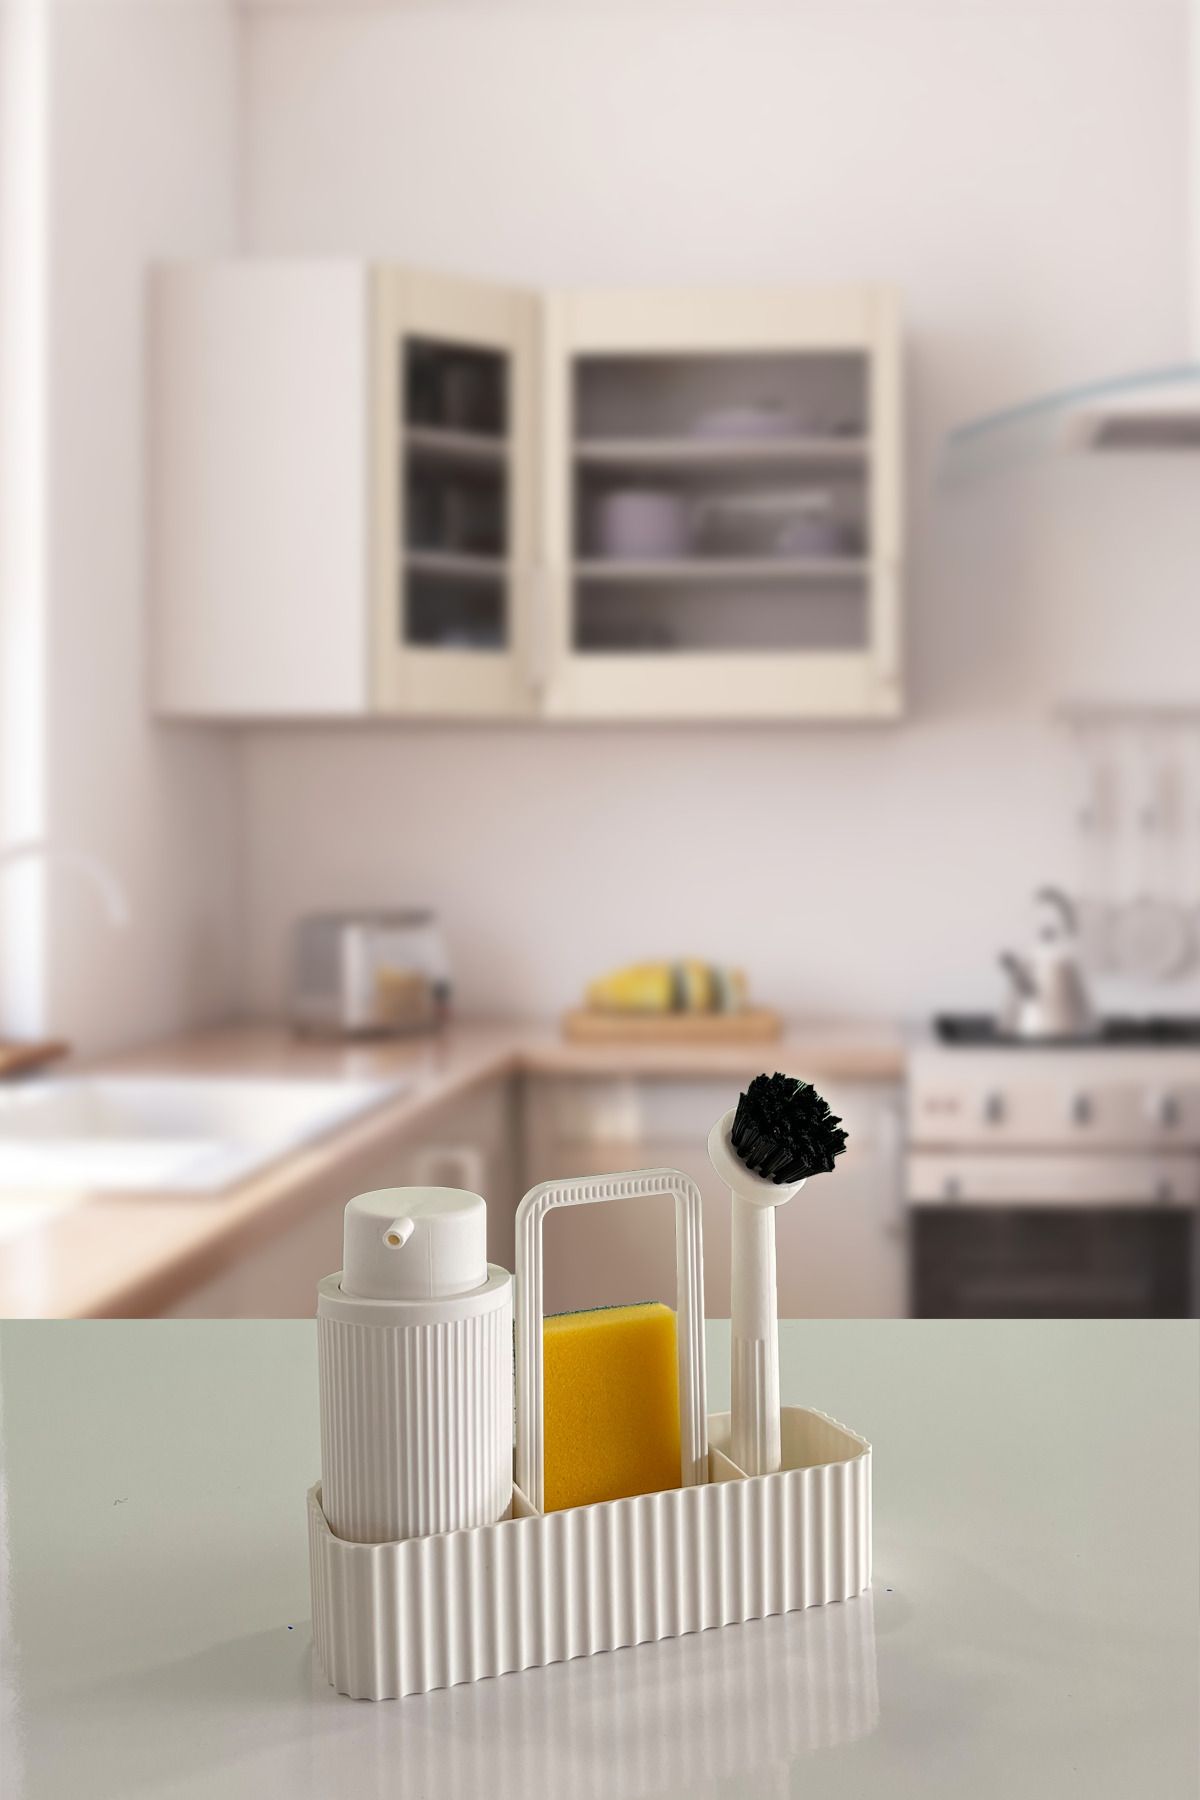 BİLTAŞ PLASTİK Milena Beyaz Fırçalı Mutfak Seti Sıvı Sabunluk Fırçalık Süngerlik & Bez Askılığı